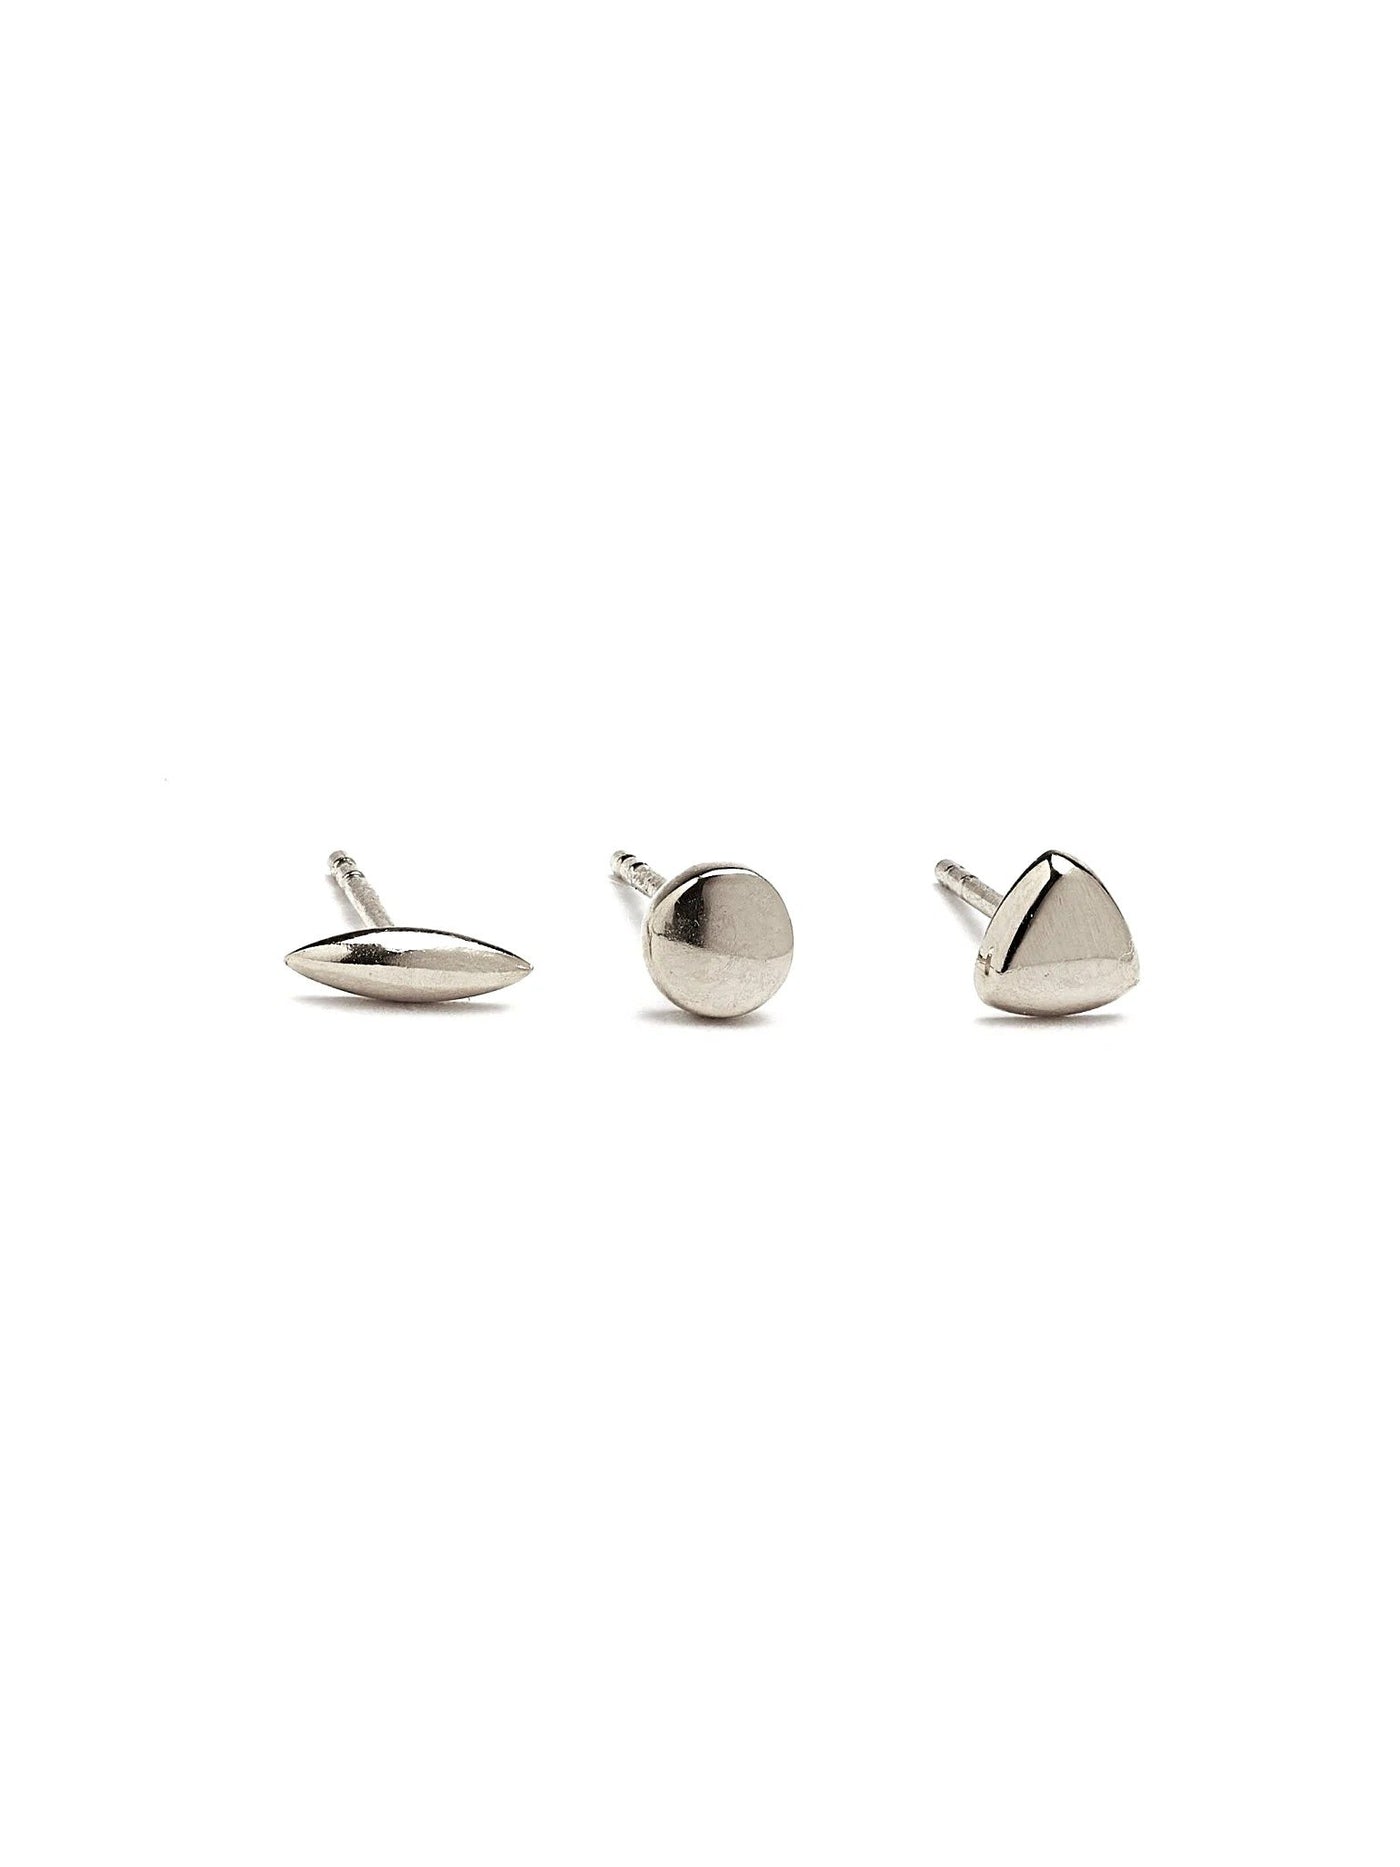 Nile Stud Earrings - 925 Sterling SilverBackUpItemsButterfly EarringsLunai Jewelry